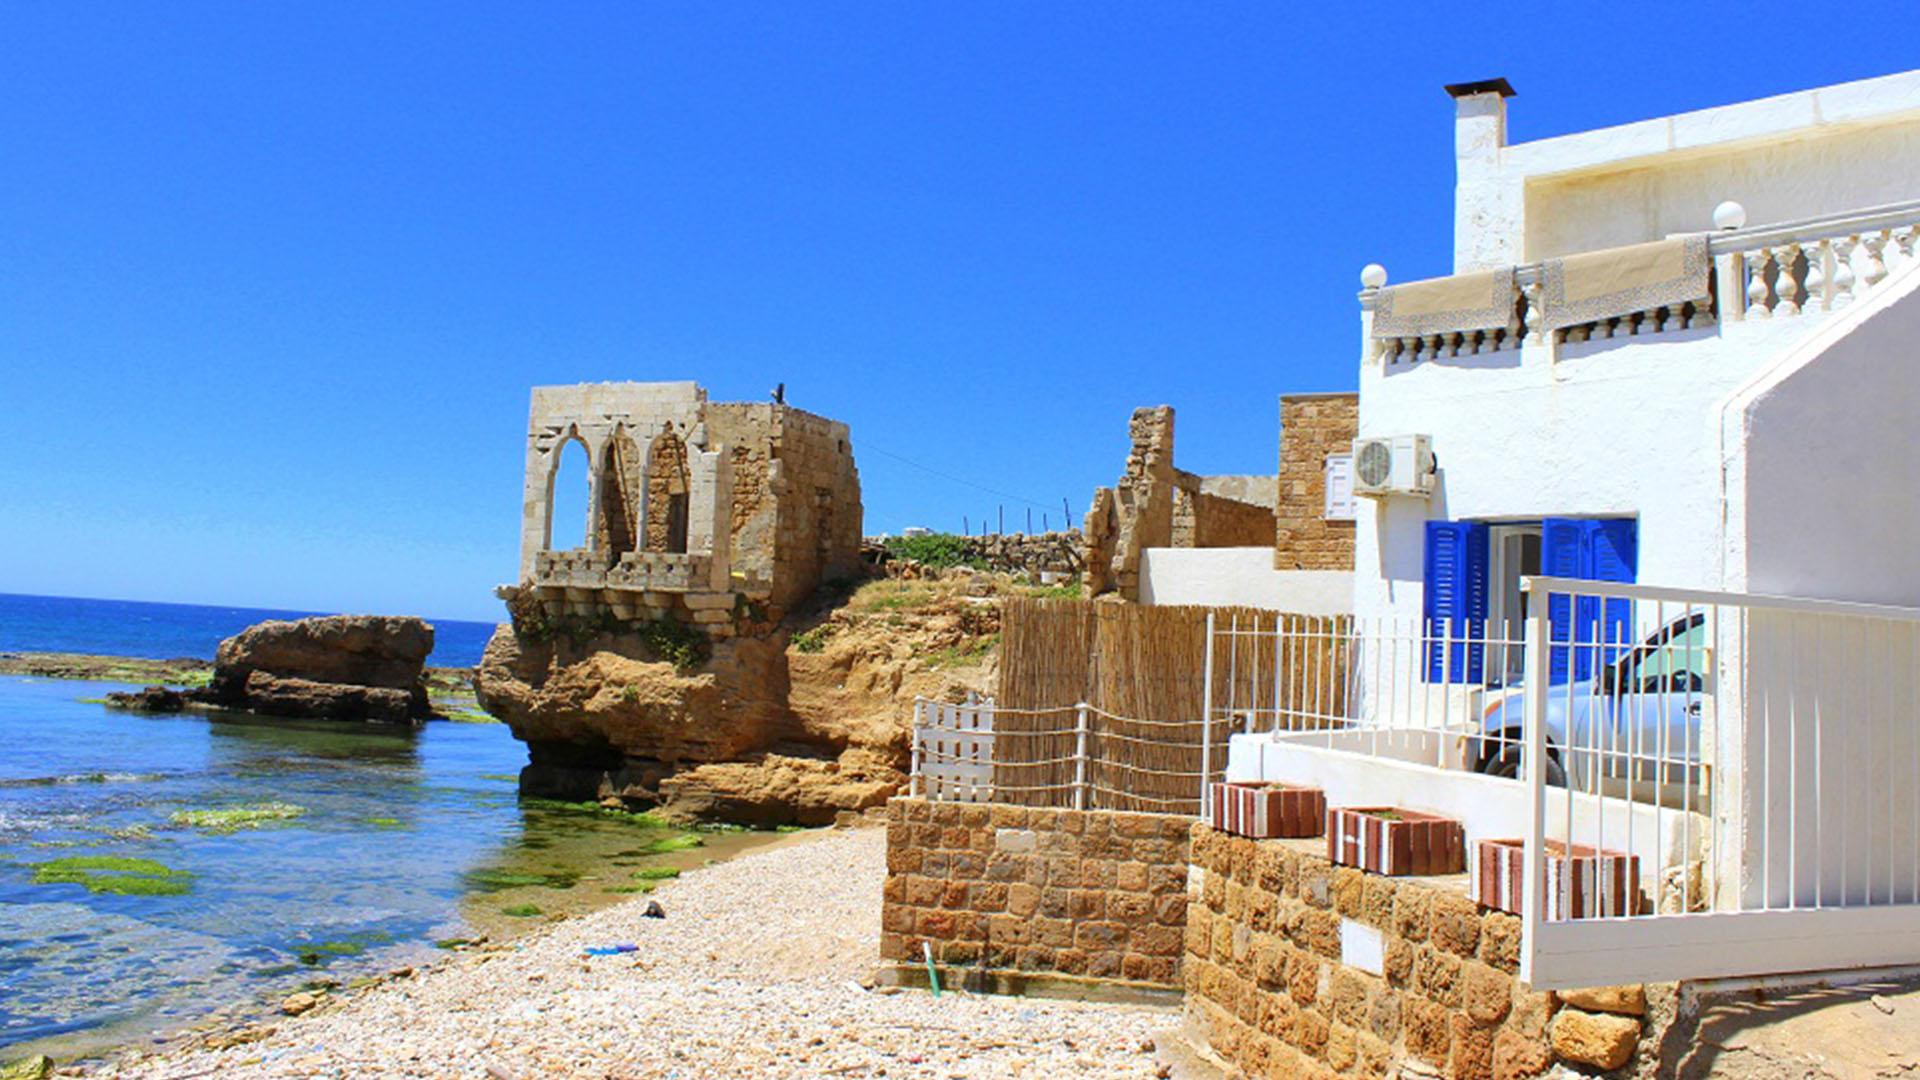 A photograph showcases the enchanting coastal town of Batroun, nestled along the shores of the Mediterranean Sea.